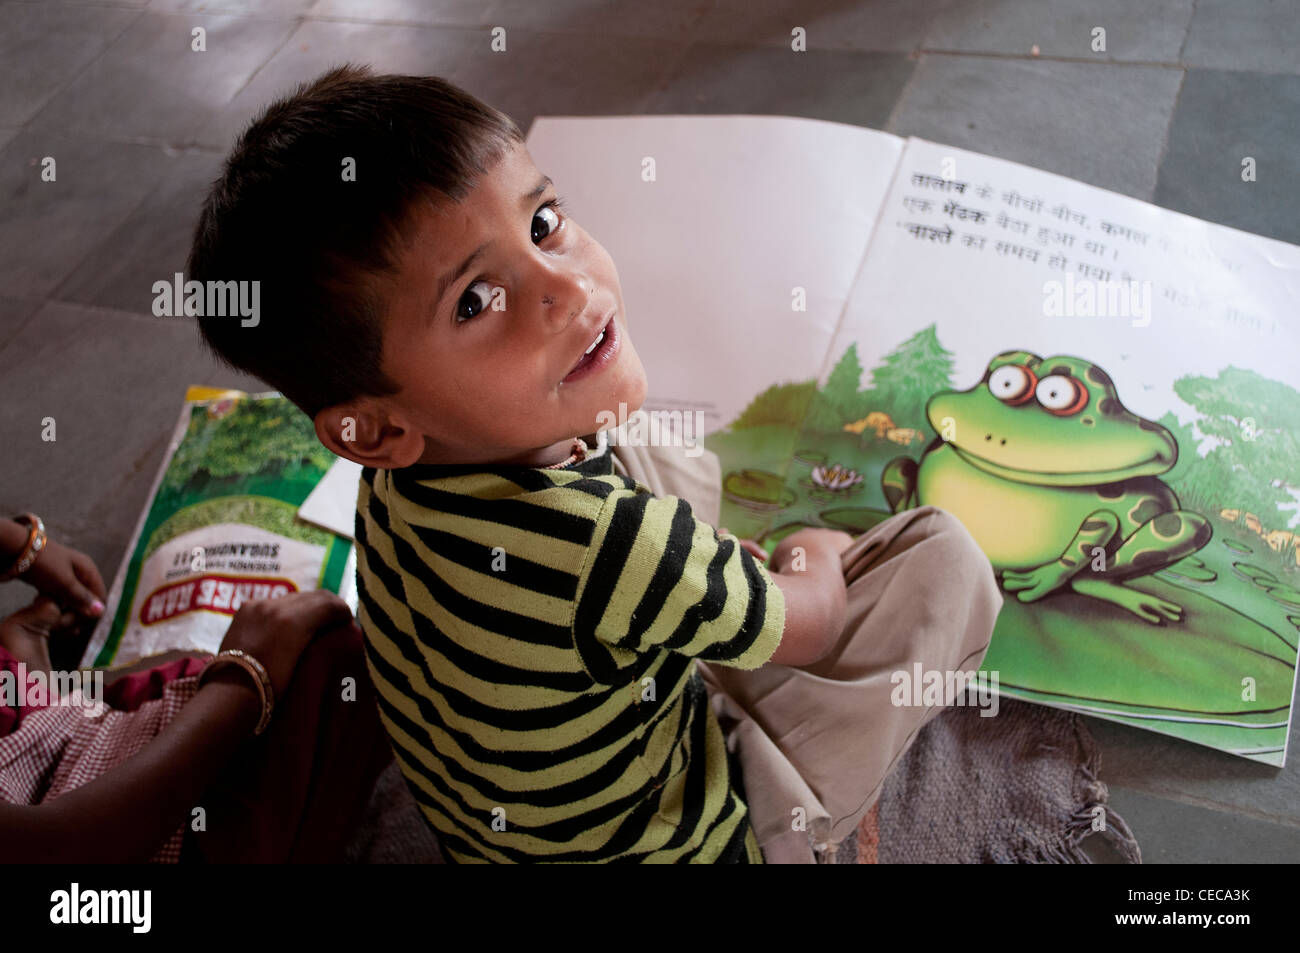 Petit garçon avec un gros livre, école du village près de Jaipur, Rajasthan, Inde Banque D'Images